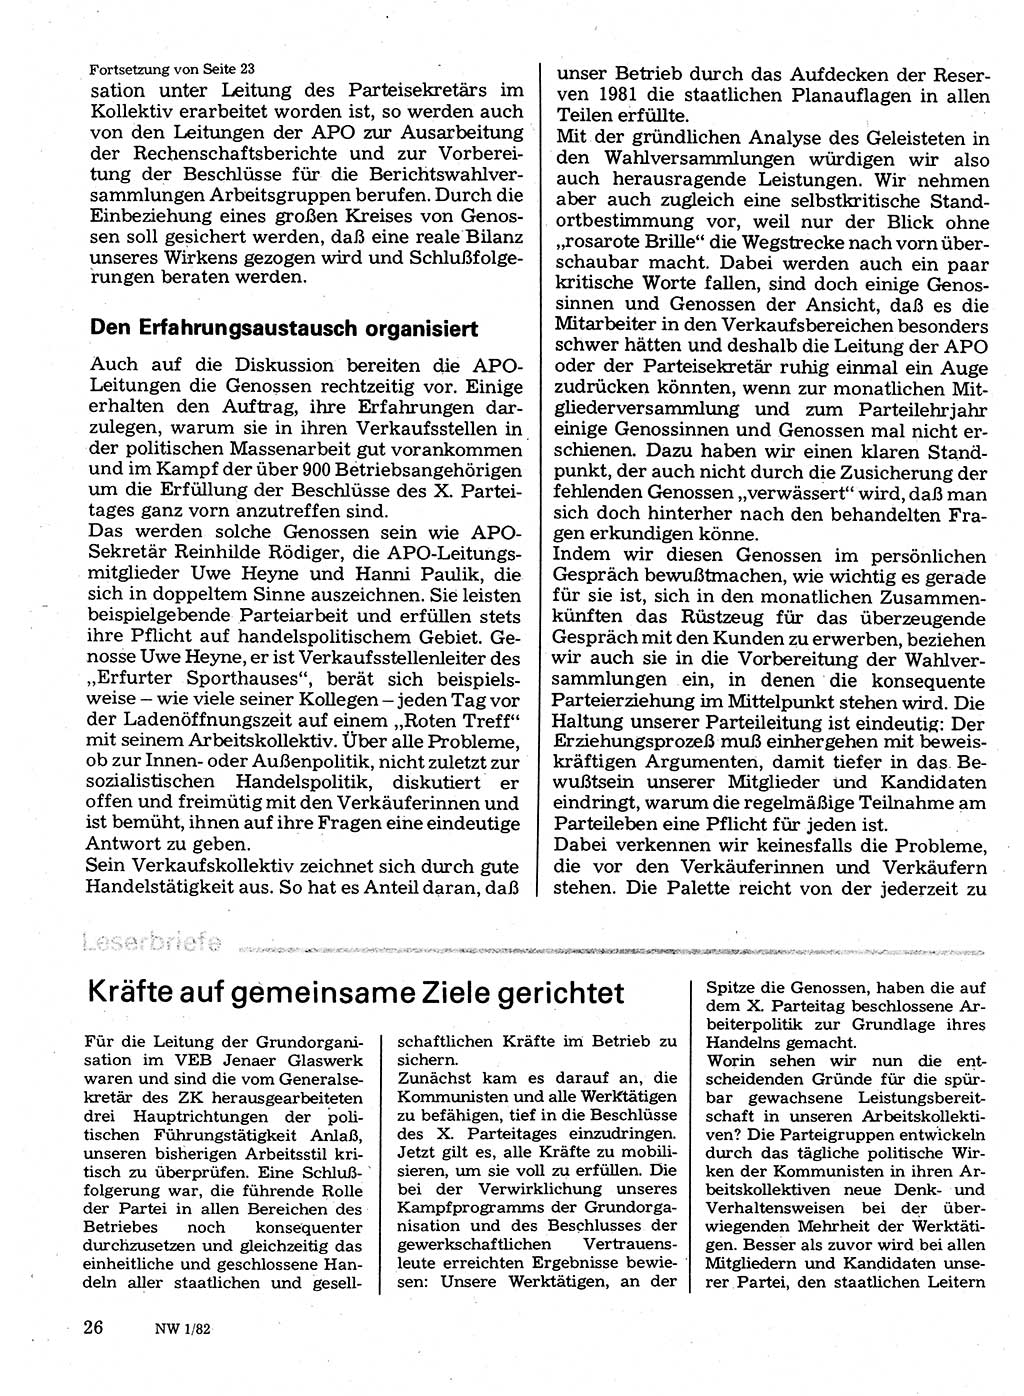 Neuer Weg (NW), Organ des Zentralkomitees (ZK) der SED (Sozialistische Einheitspartei Deutschlands) für Fragen des Parteilebens, 37. Jahrgang [Deutsche Demokratische Republik (DDR)] 1982, Seite 26 (NW ZK SED DDR 1982, S. 26)